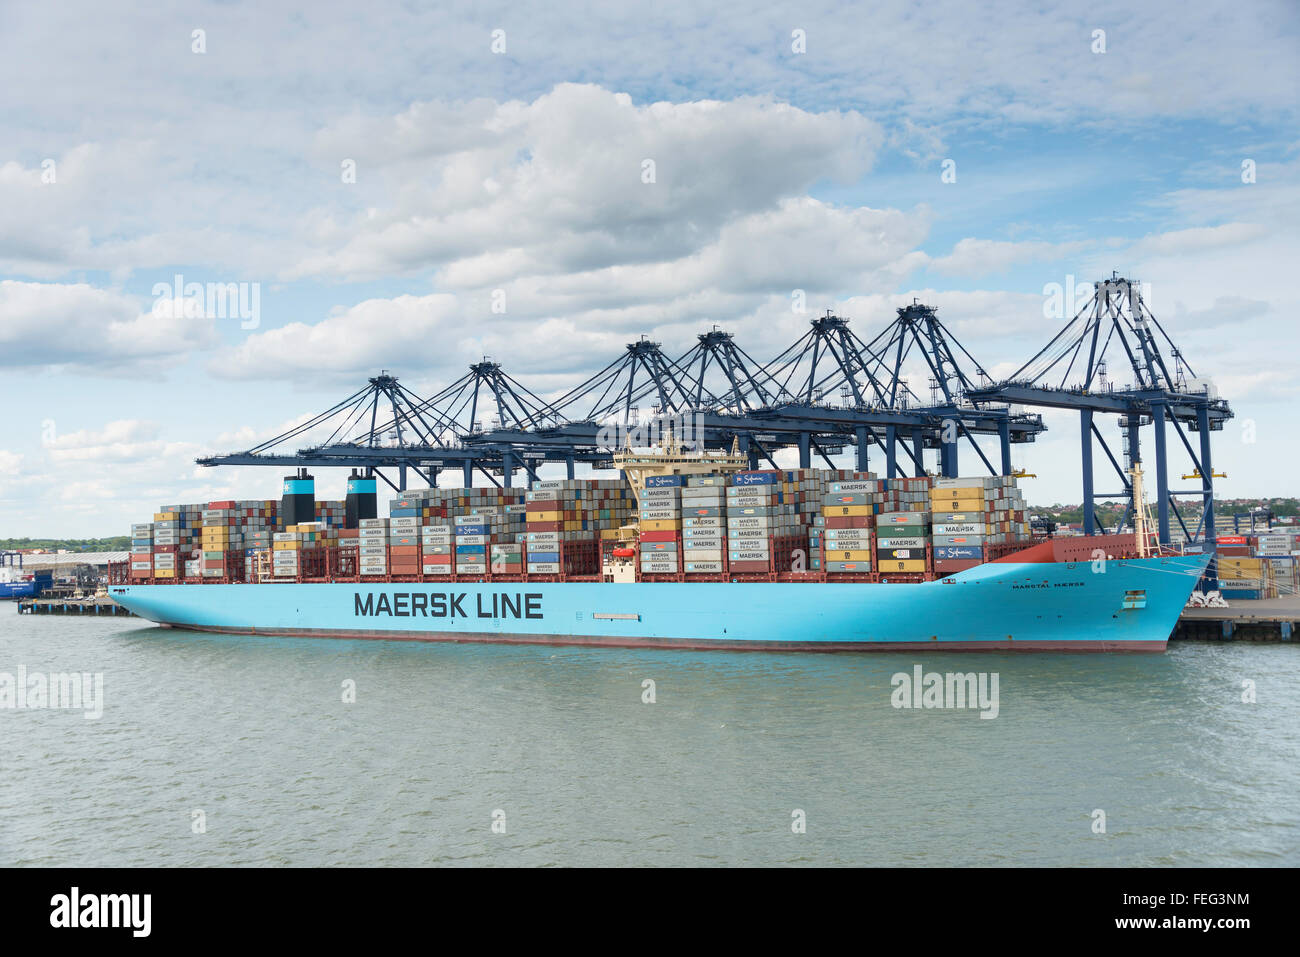 Maersk Line porte-conteneurs dans le port de Felixstowe, Essex, Angleterre, Royaume-Uni Banque D'Images